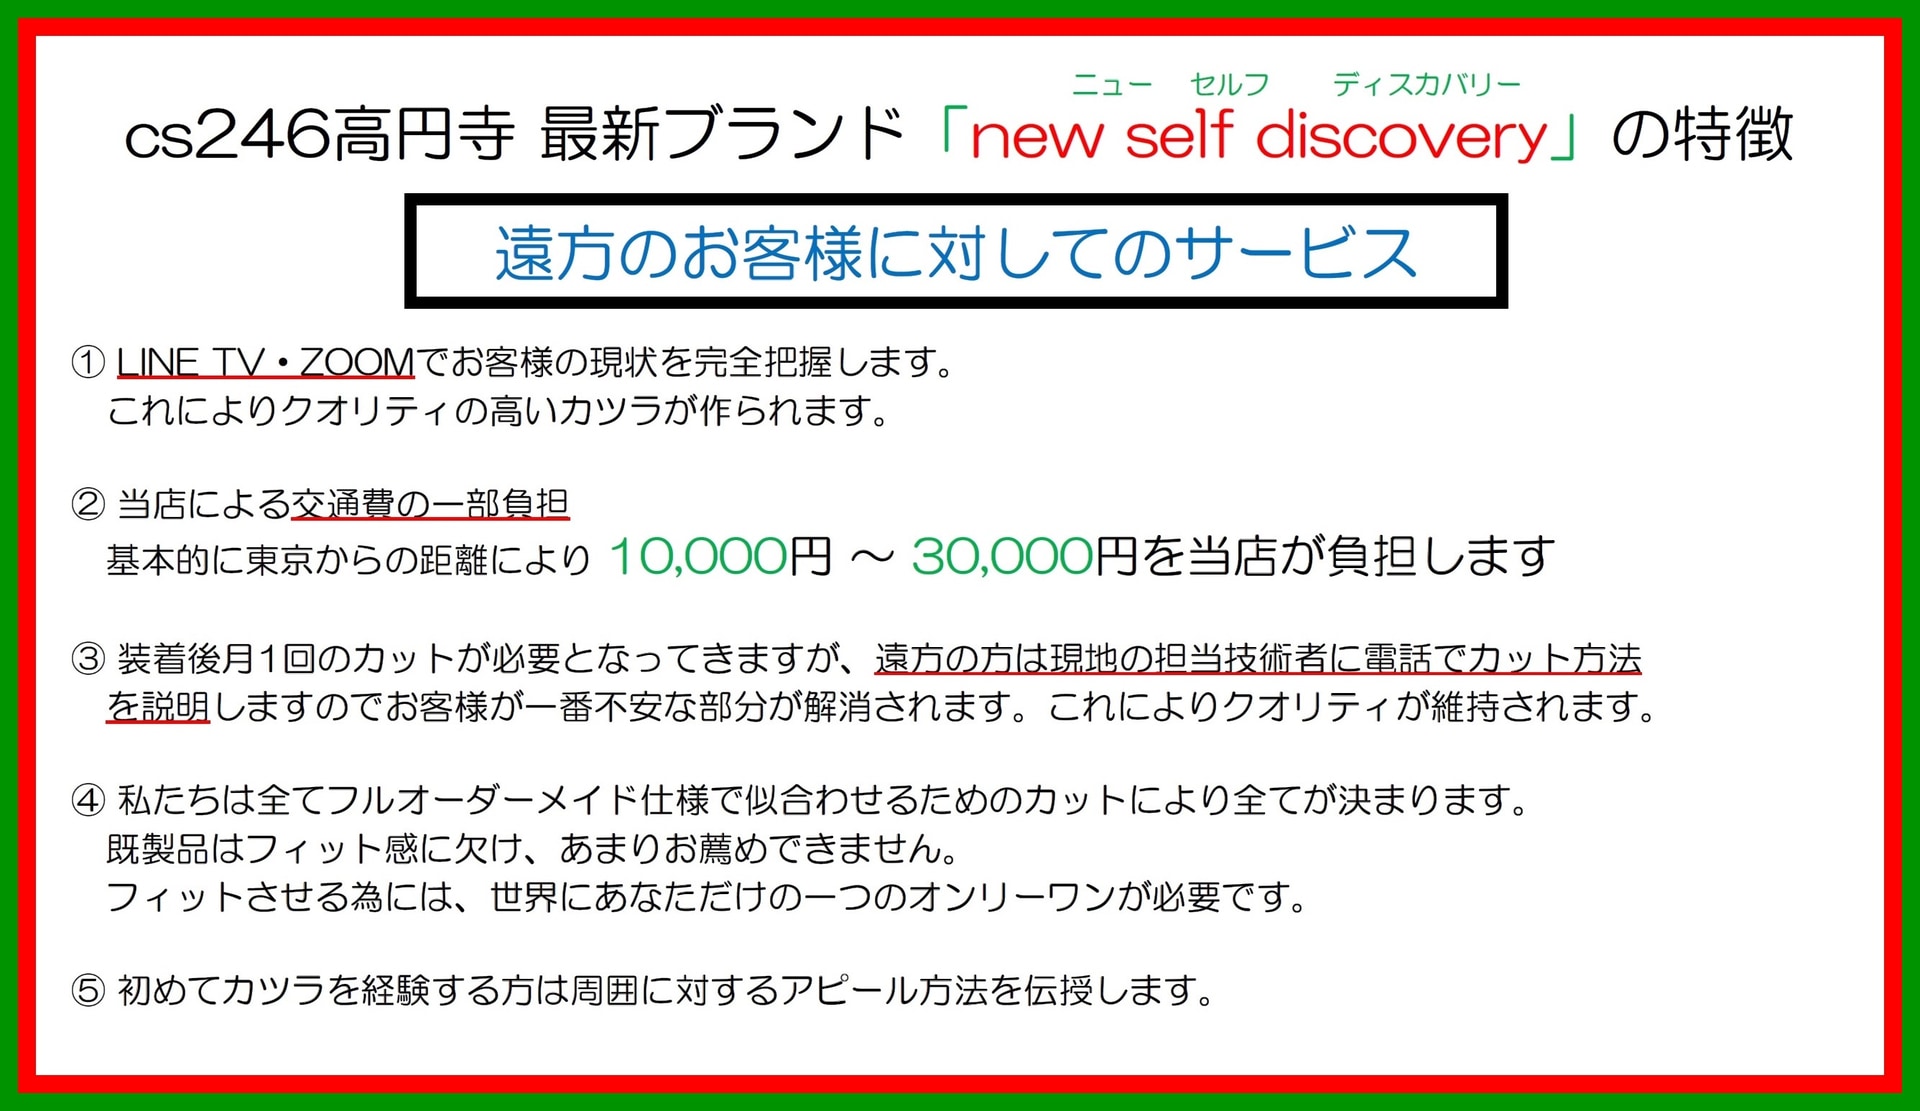 カツラ「new self discover y 」の特徴（方のお客様に対してのサービス）：１．L INE TV ・Z OOM でお客様の現状を完全把握します。これによりクオリティの高いカツラが作られます。２．当店による交通費の一部負担 基本的に東京都杉並区からの距離により1 万円～3 万円を当店が負担します。３．装着後月1 回のカットが必要となってきますが、遠方の方は現地の担当技術者に電話でカット方法を説明しますのでお客様が一番不安な部分が解消されます。これによりクオリティが維持されます。４．私達は全てフルオーダーメイド仕様で似合わせるためのカットにより全てが決まります。既製品はフィット感に欠け、あまりお薦めできません。フィットさせる為には、世界にあなただけの一つのオンリーワンが必要です。５．初めてカツラを経験する方は周囲に対するアピール方法を伝授します。